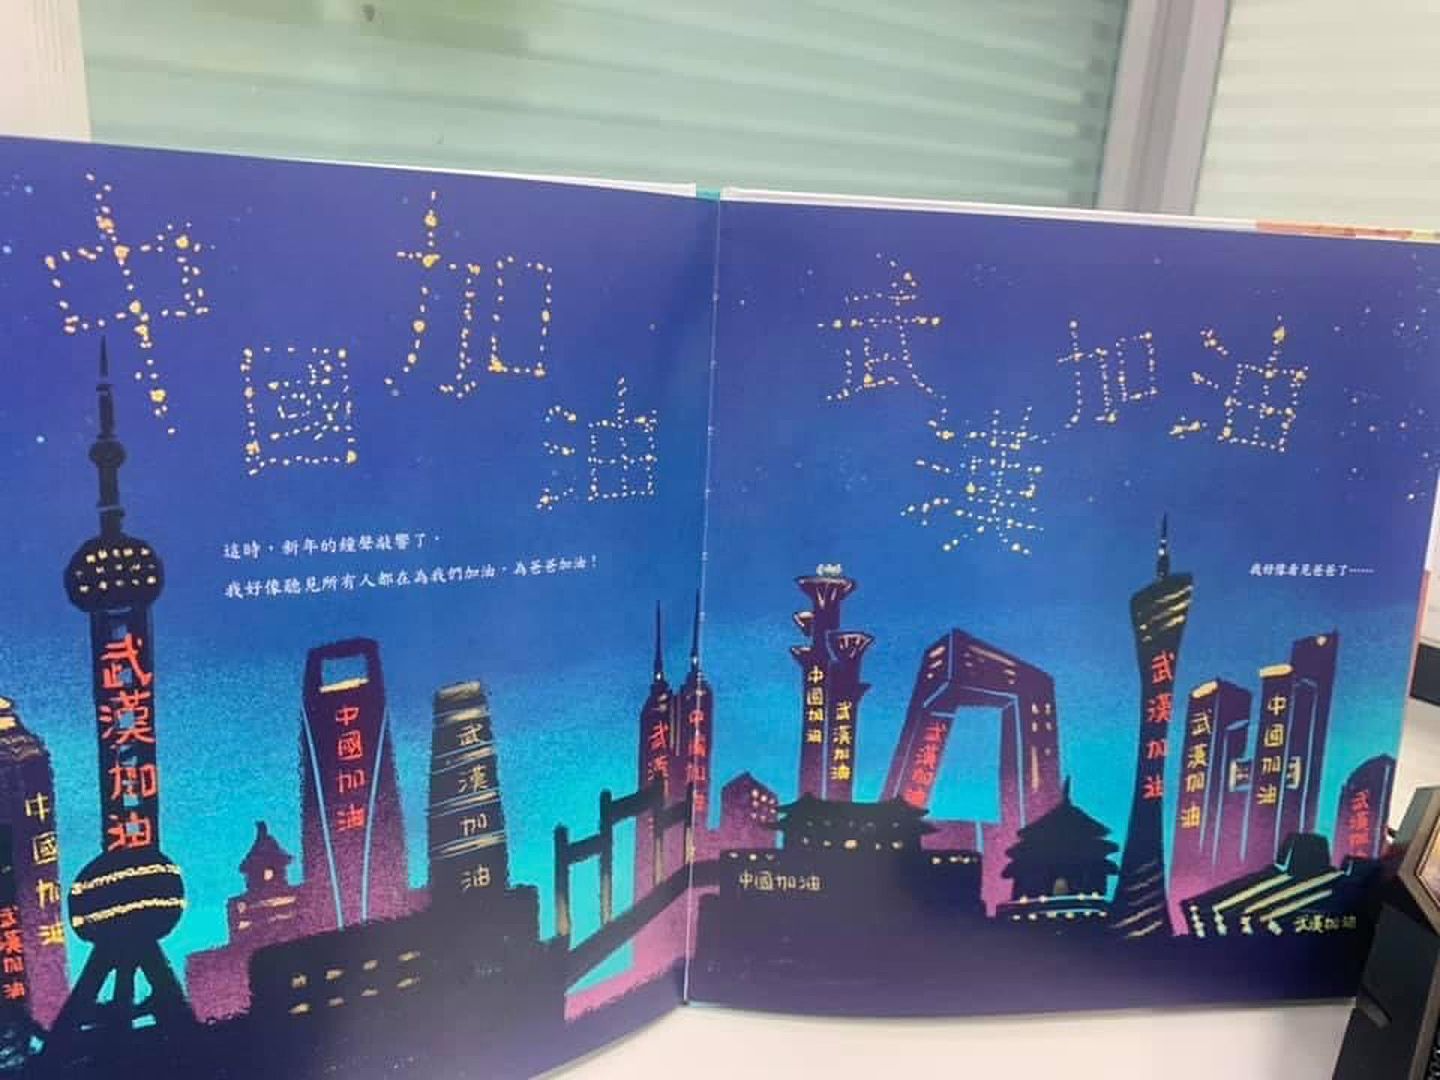 台湾童书《等爸爸回家》出现“中国加油”、“武汉加油”等字眼，绿营民代忧心“洗红”台湾儿童。(Facebook@陈怡珍)